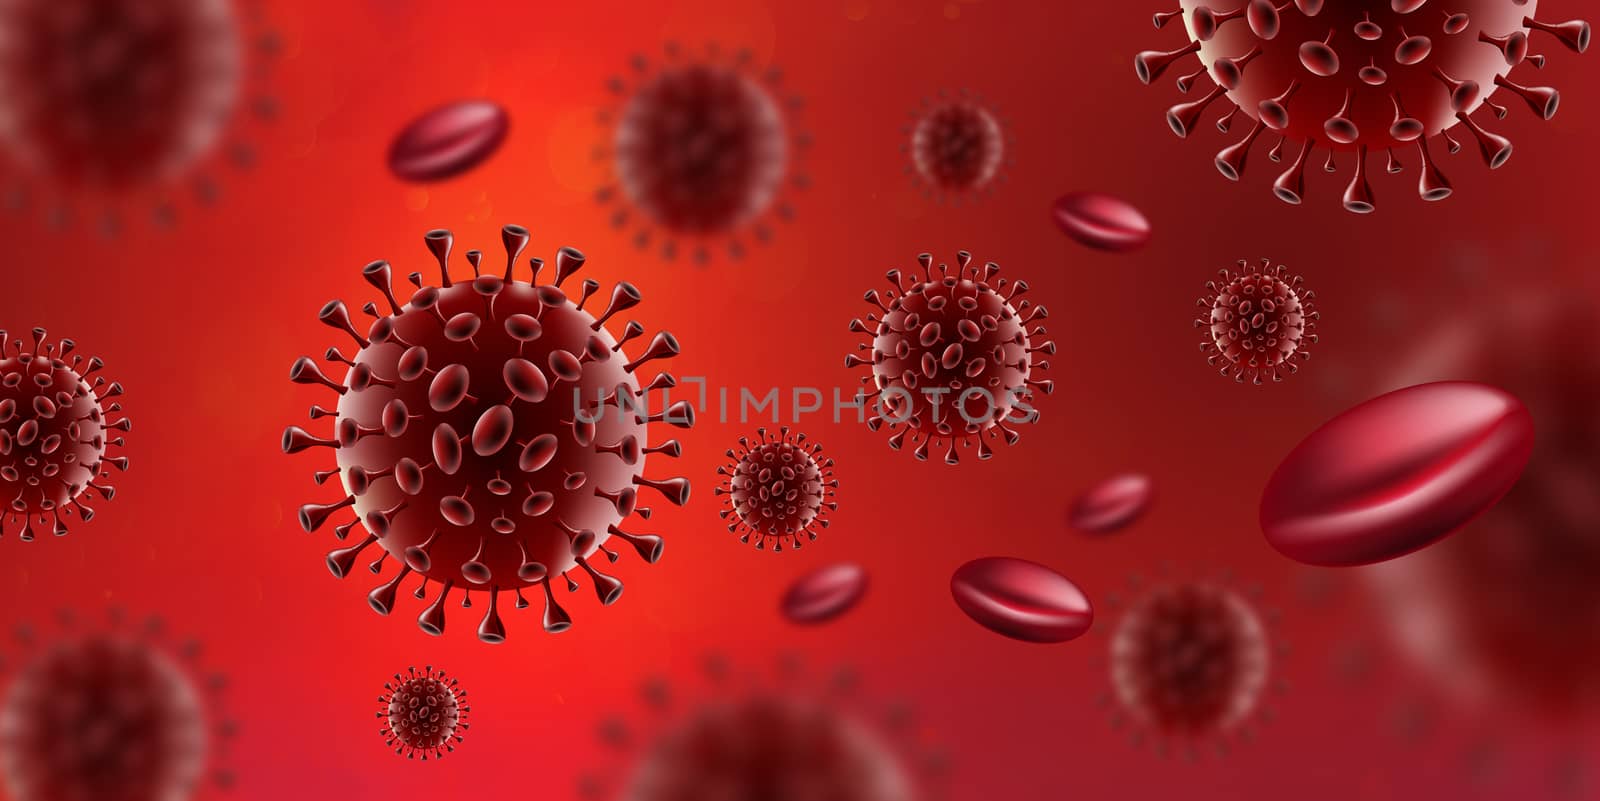 Covid-19 Coronavirus virus in red blood